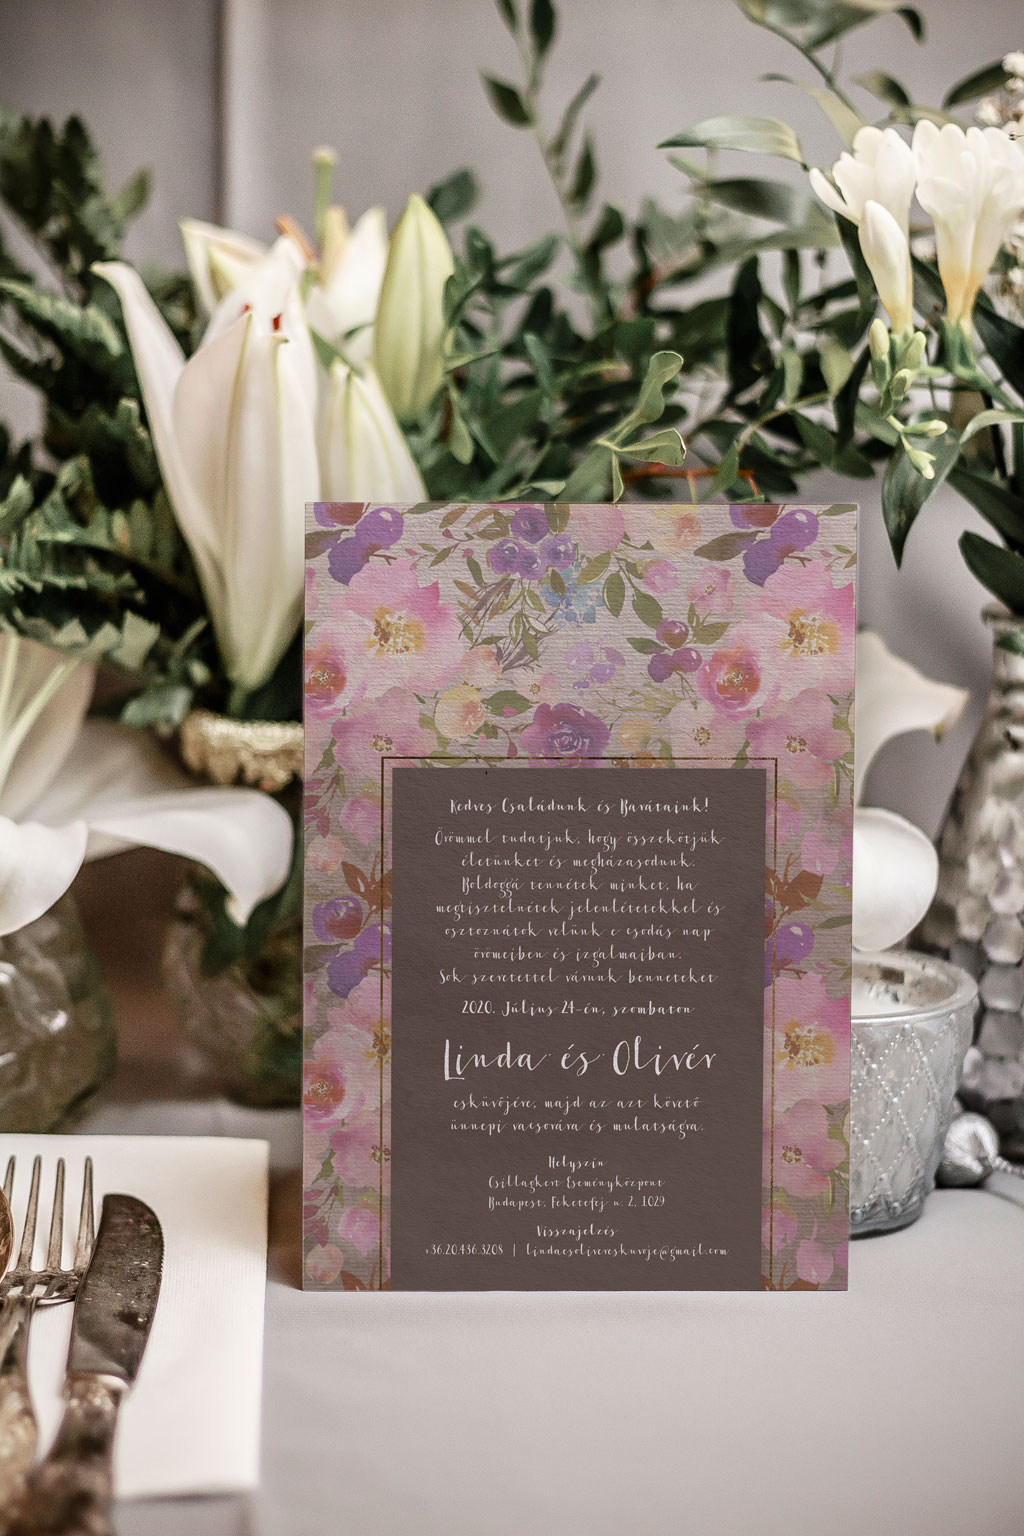 Tavaszi virágos esküvői meghívó halvány rózsaszín, élénk pink és ciklámen, apró kék és krém virágos, zöld leveles grafikával, drapp alnyomattal.